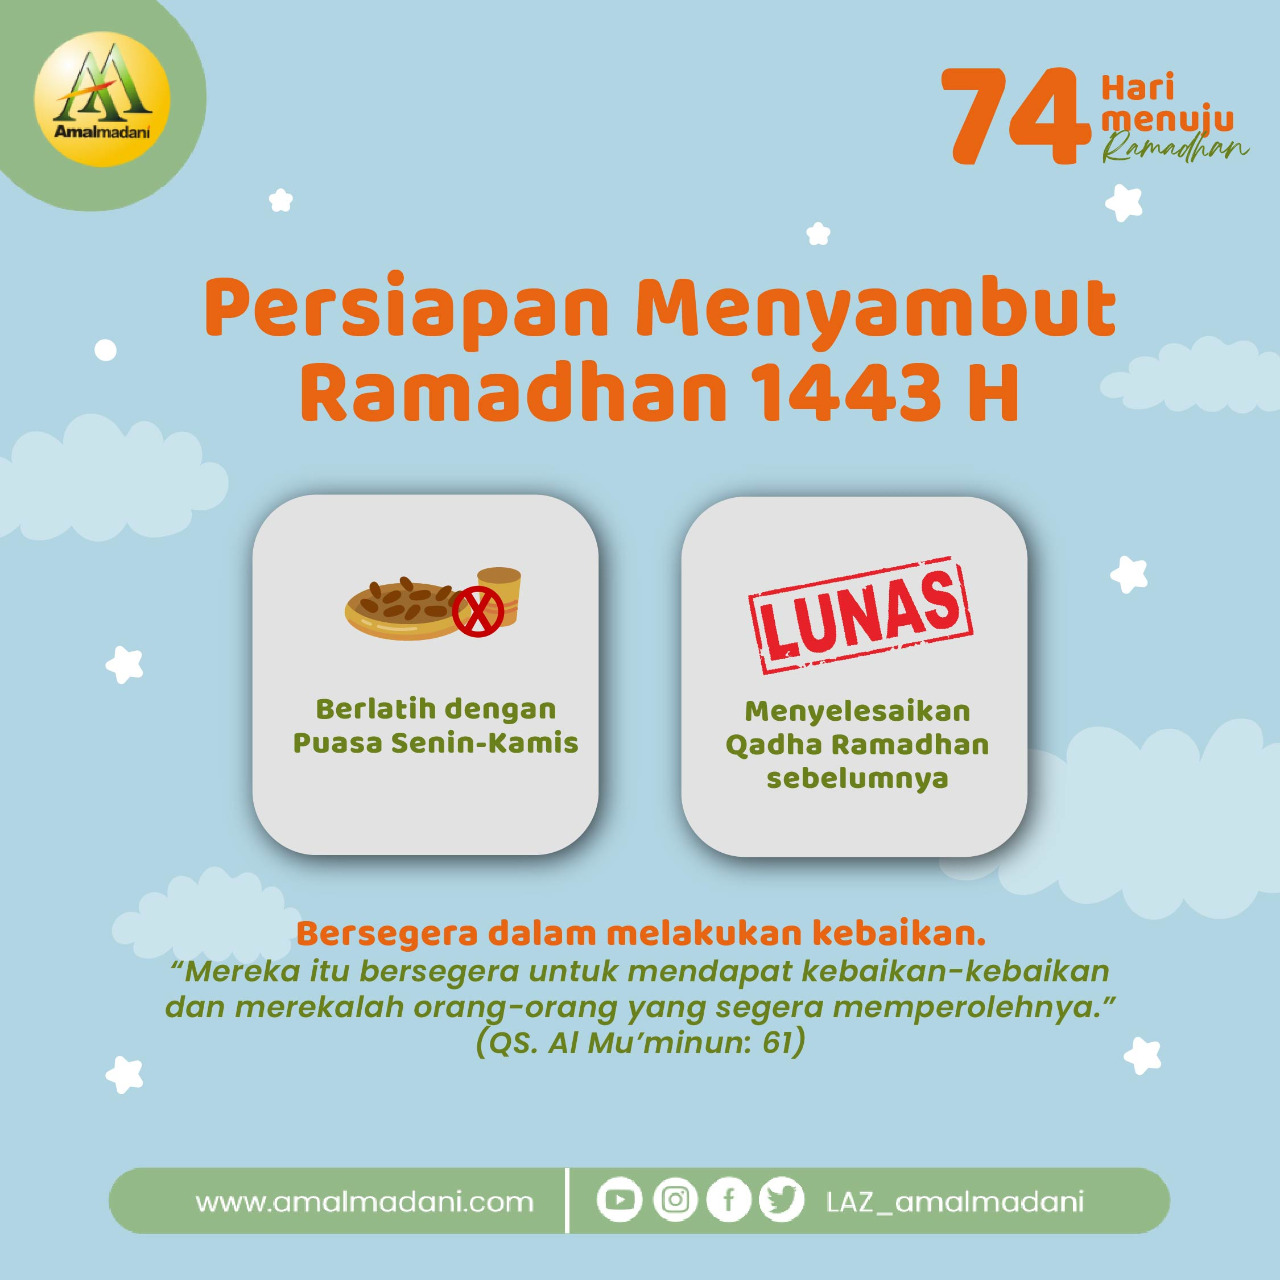 H-74 Menyambut Ramadhan